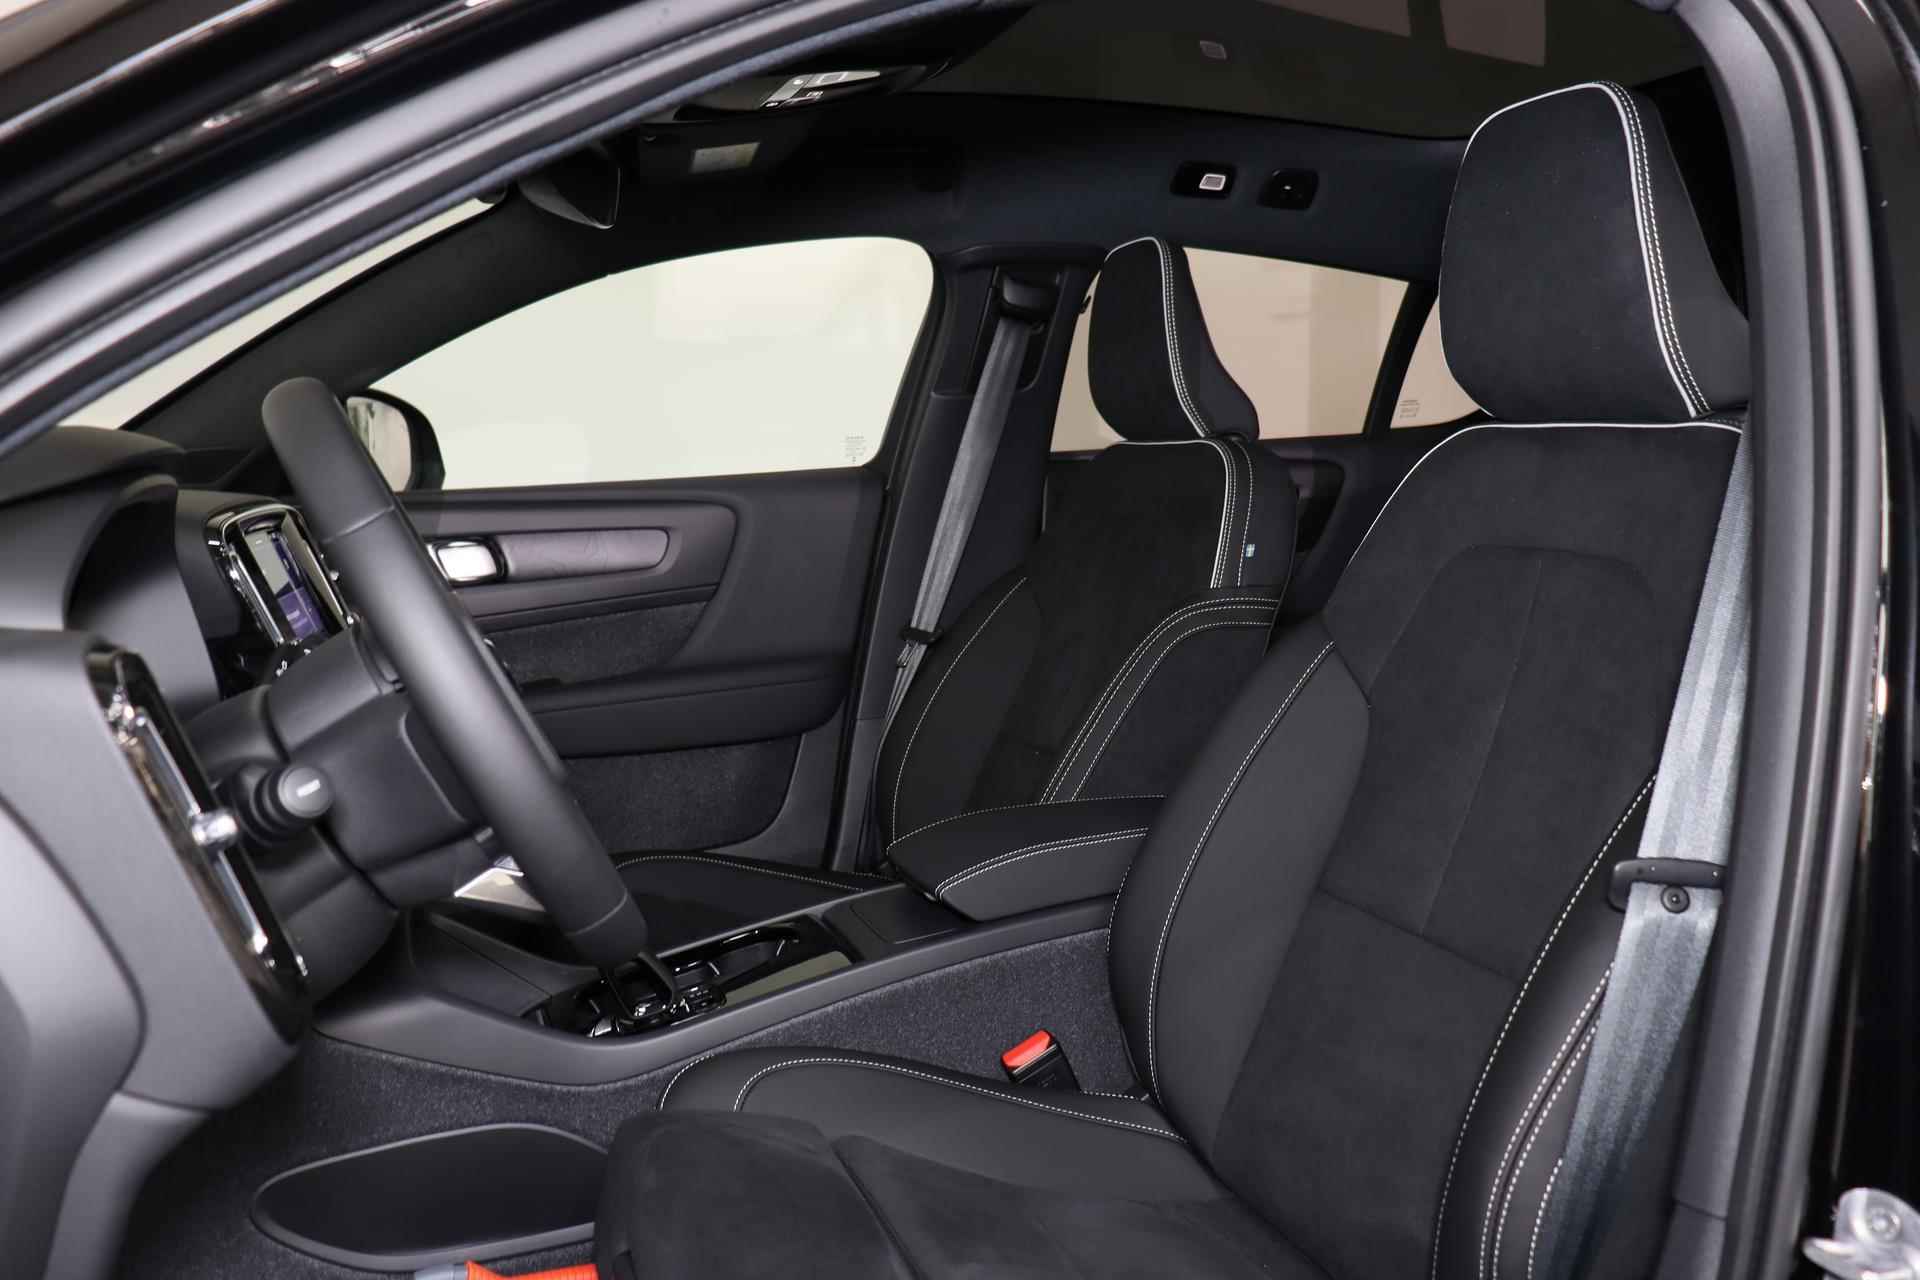 Volvo C40 Single Motor Extended Range Plus 82 kWh - Panoramadak - Parkeercamera achter - Verwarmde voorstoelen & stuur - Parkeersensoren voor & achter - Extra getint glas - 20' LMV - 9/23